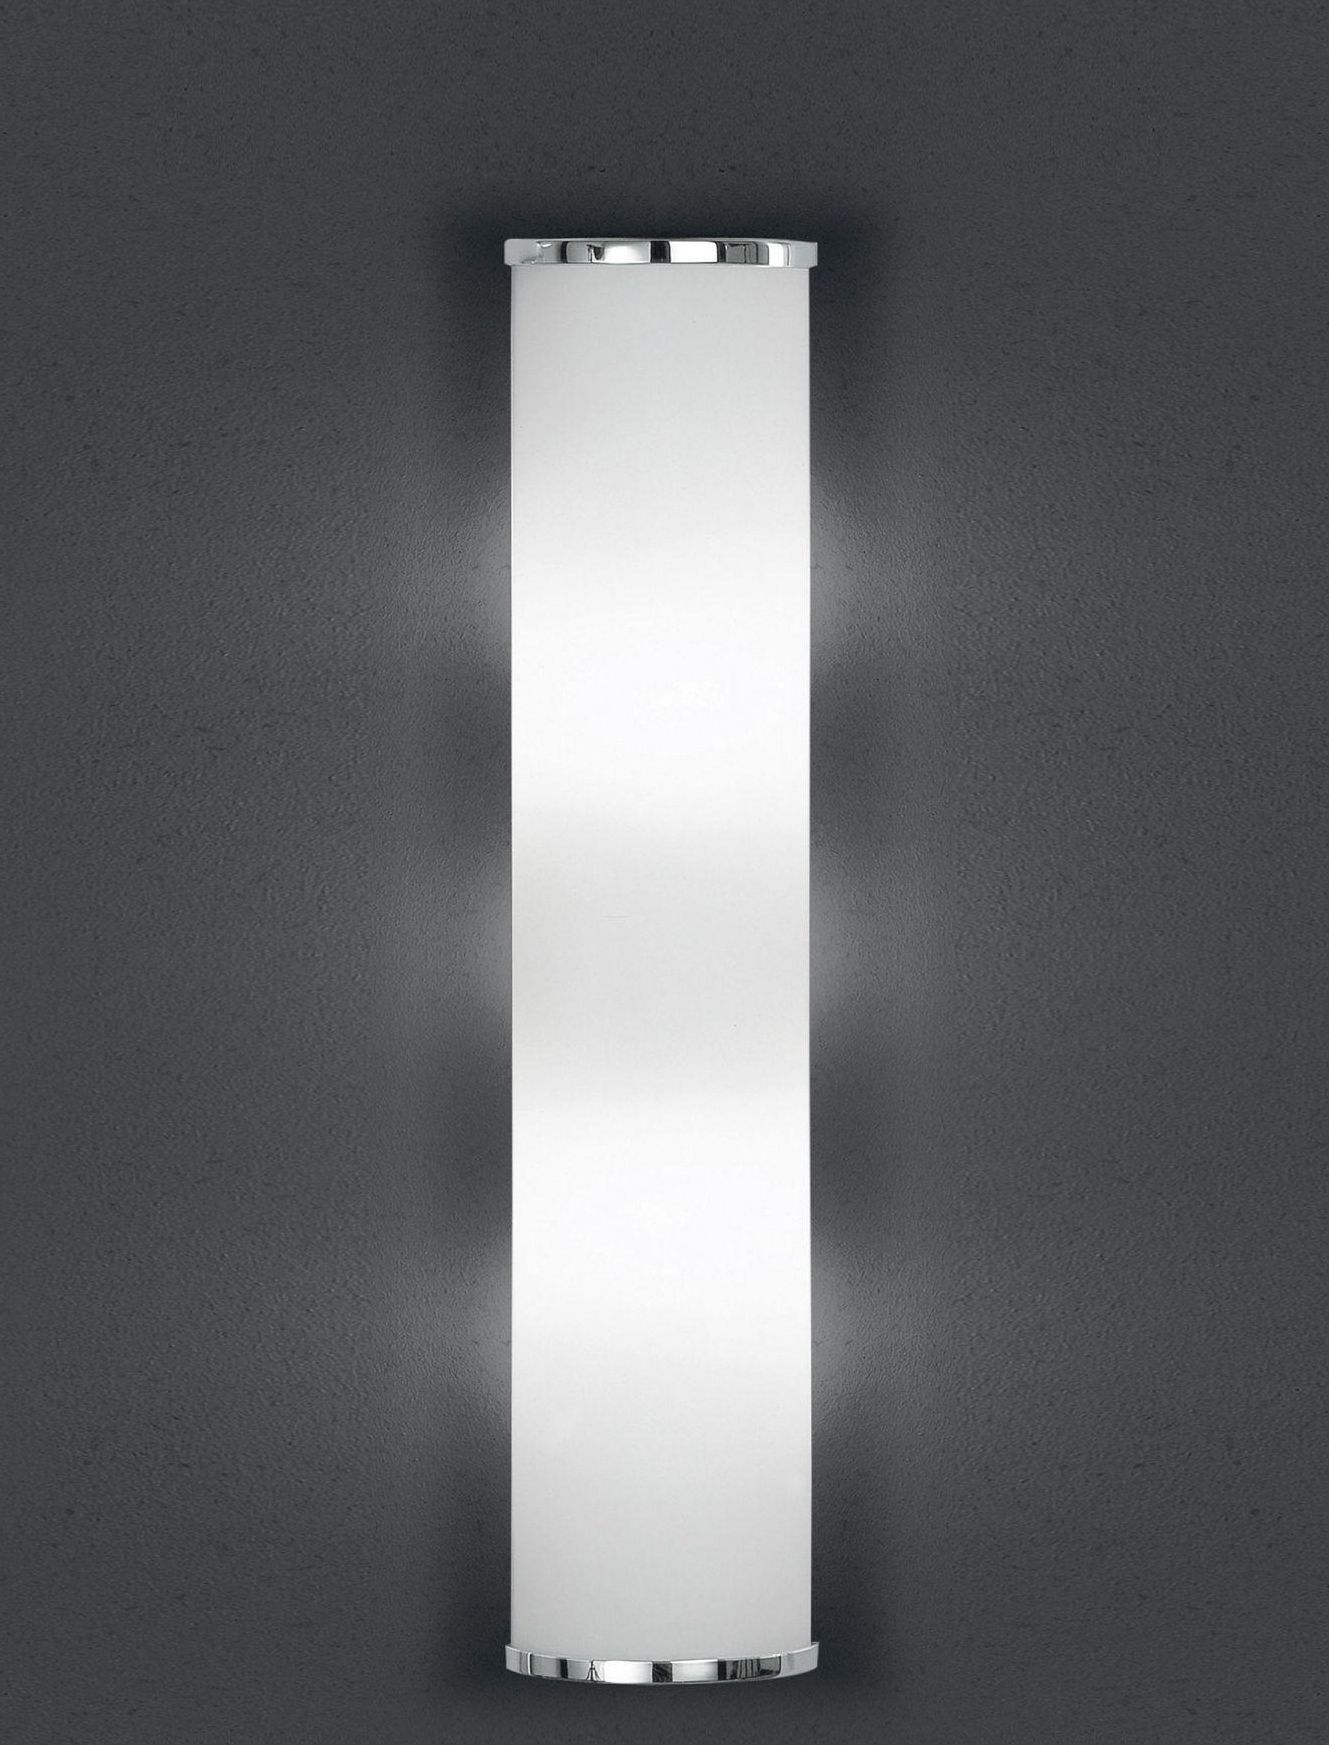 BANKAMP Leuchtenmanufaktur Klassische Wandleuchten & Wandlampen von BANKAMP Leuchtenmanufaktur LED-Wandleuchte Cromo 4295/530-02